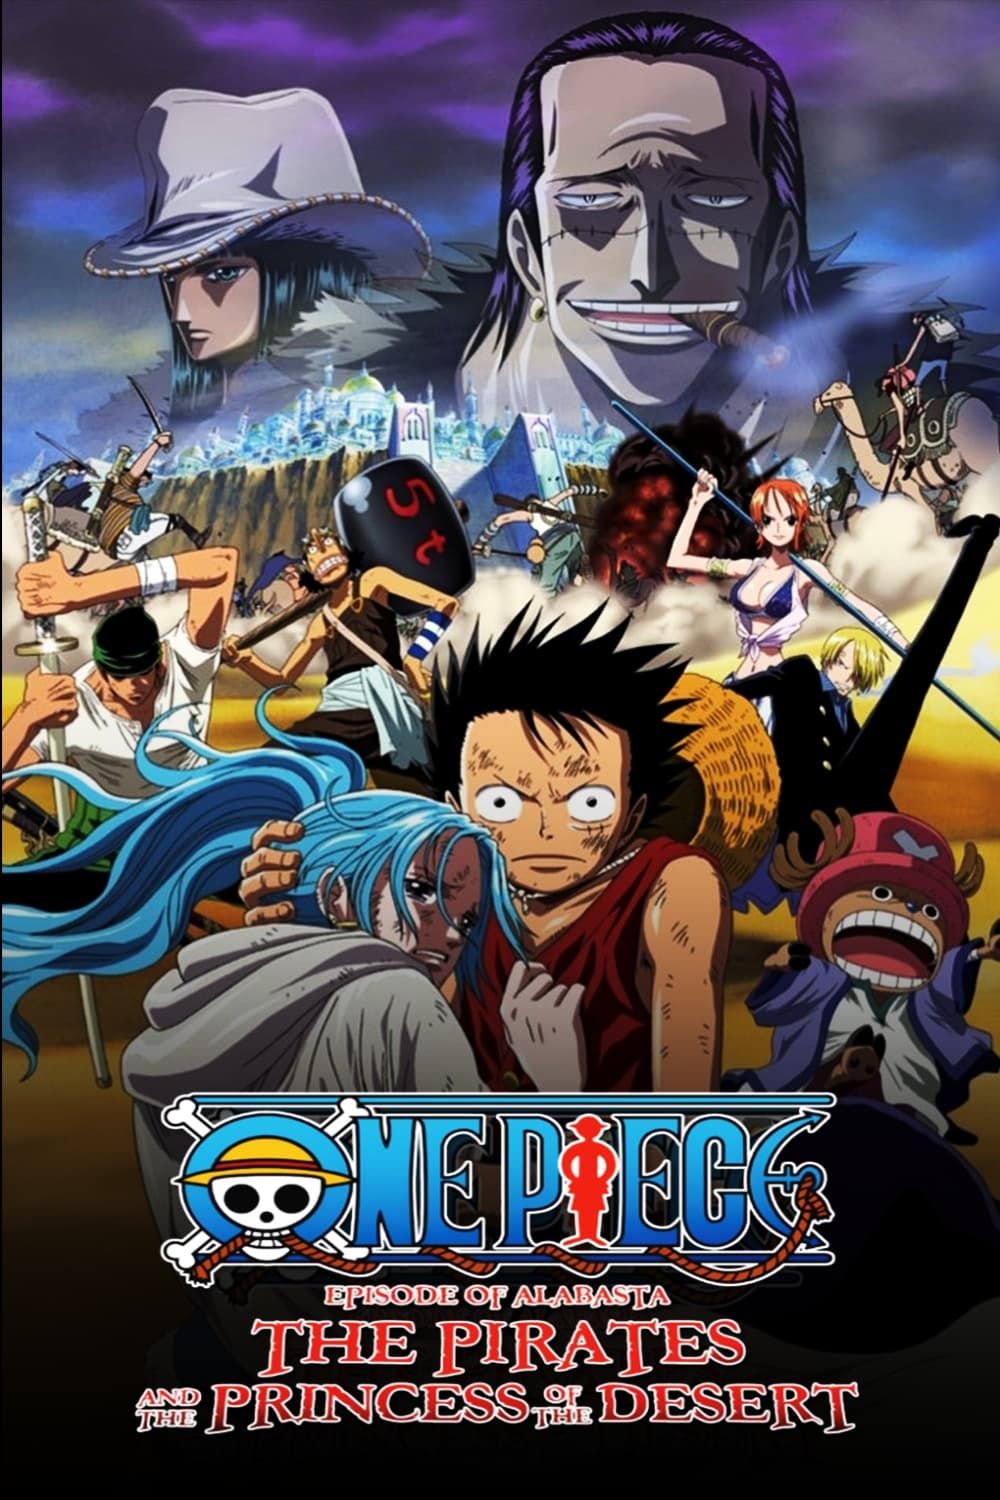 One Piece: Episode of Merry - Mou Hitori no Nakama no Monogatari